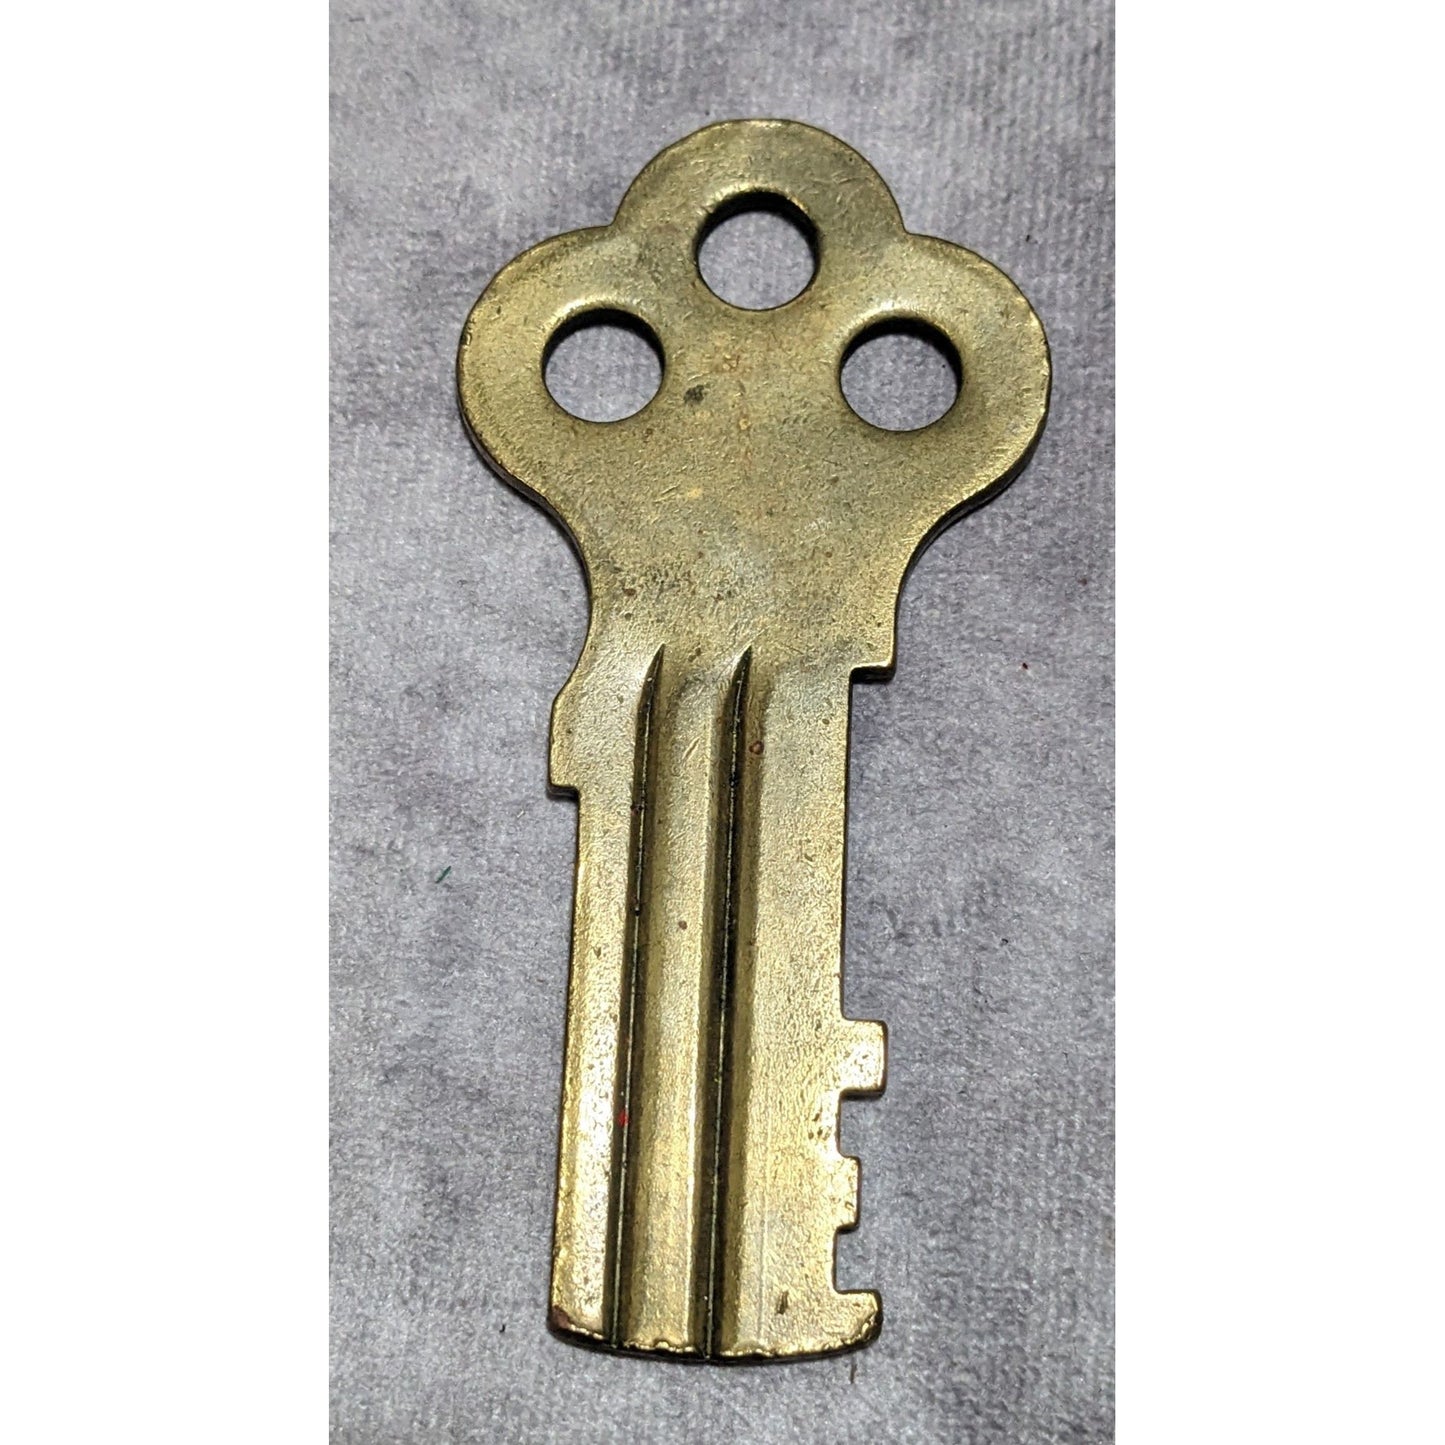 Vintage Souvenir Brass Alcatraz Prison Key